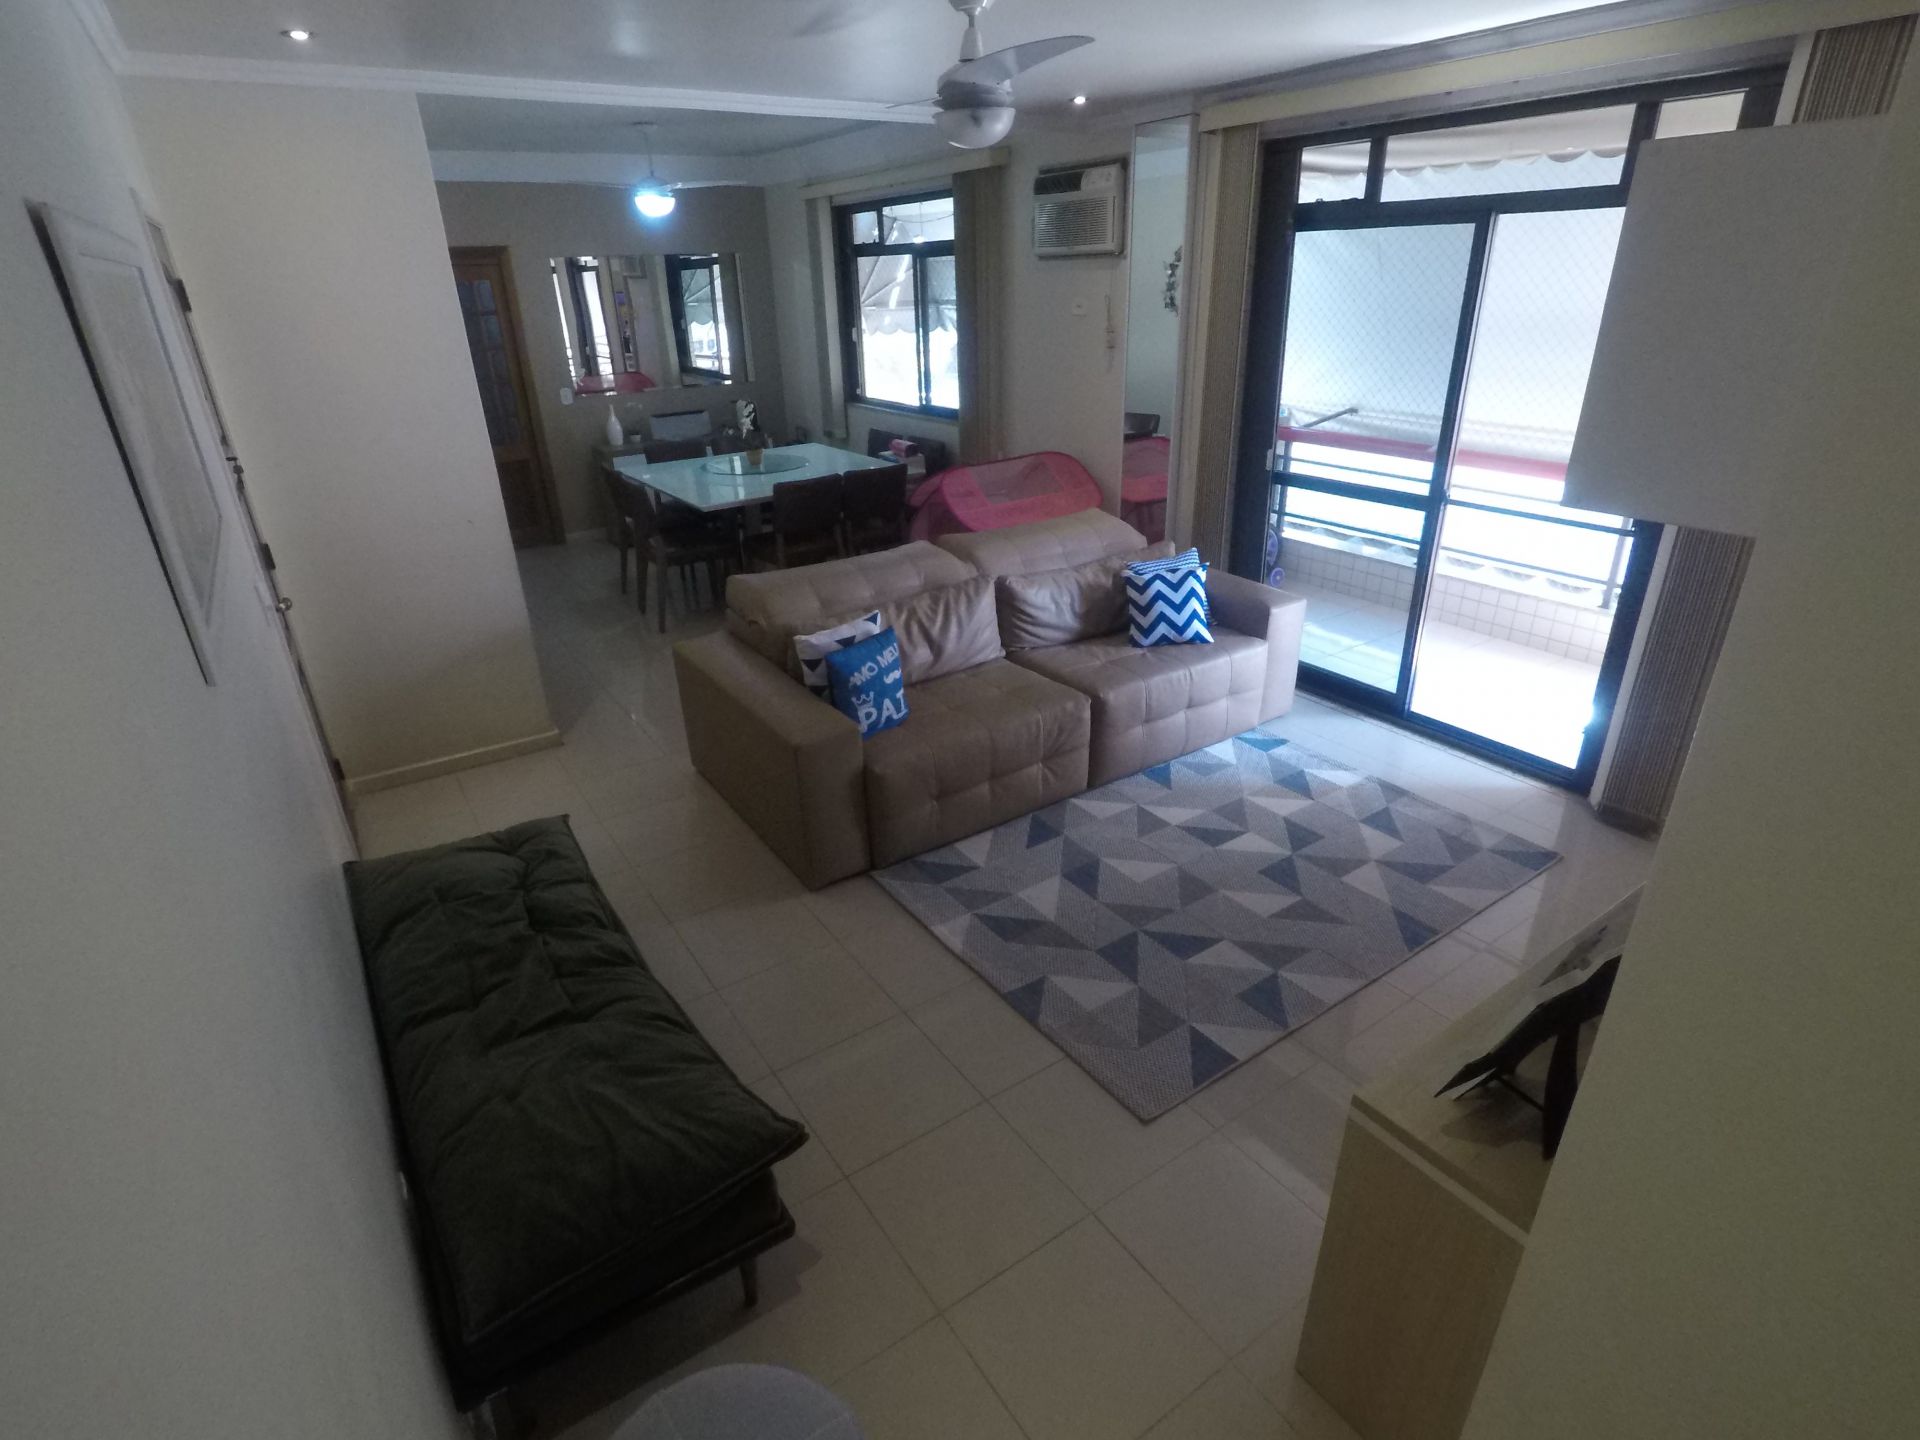 FOTO 1 - Apartamento 2 quartos à venda Vila Valqueire, Rio de Janeiro - R$ 620.000 - RF176 - 1